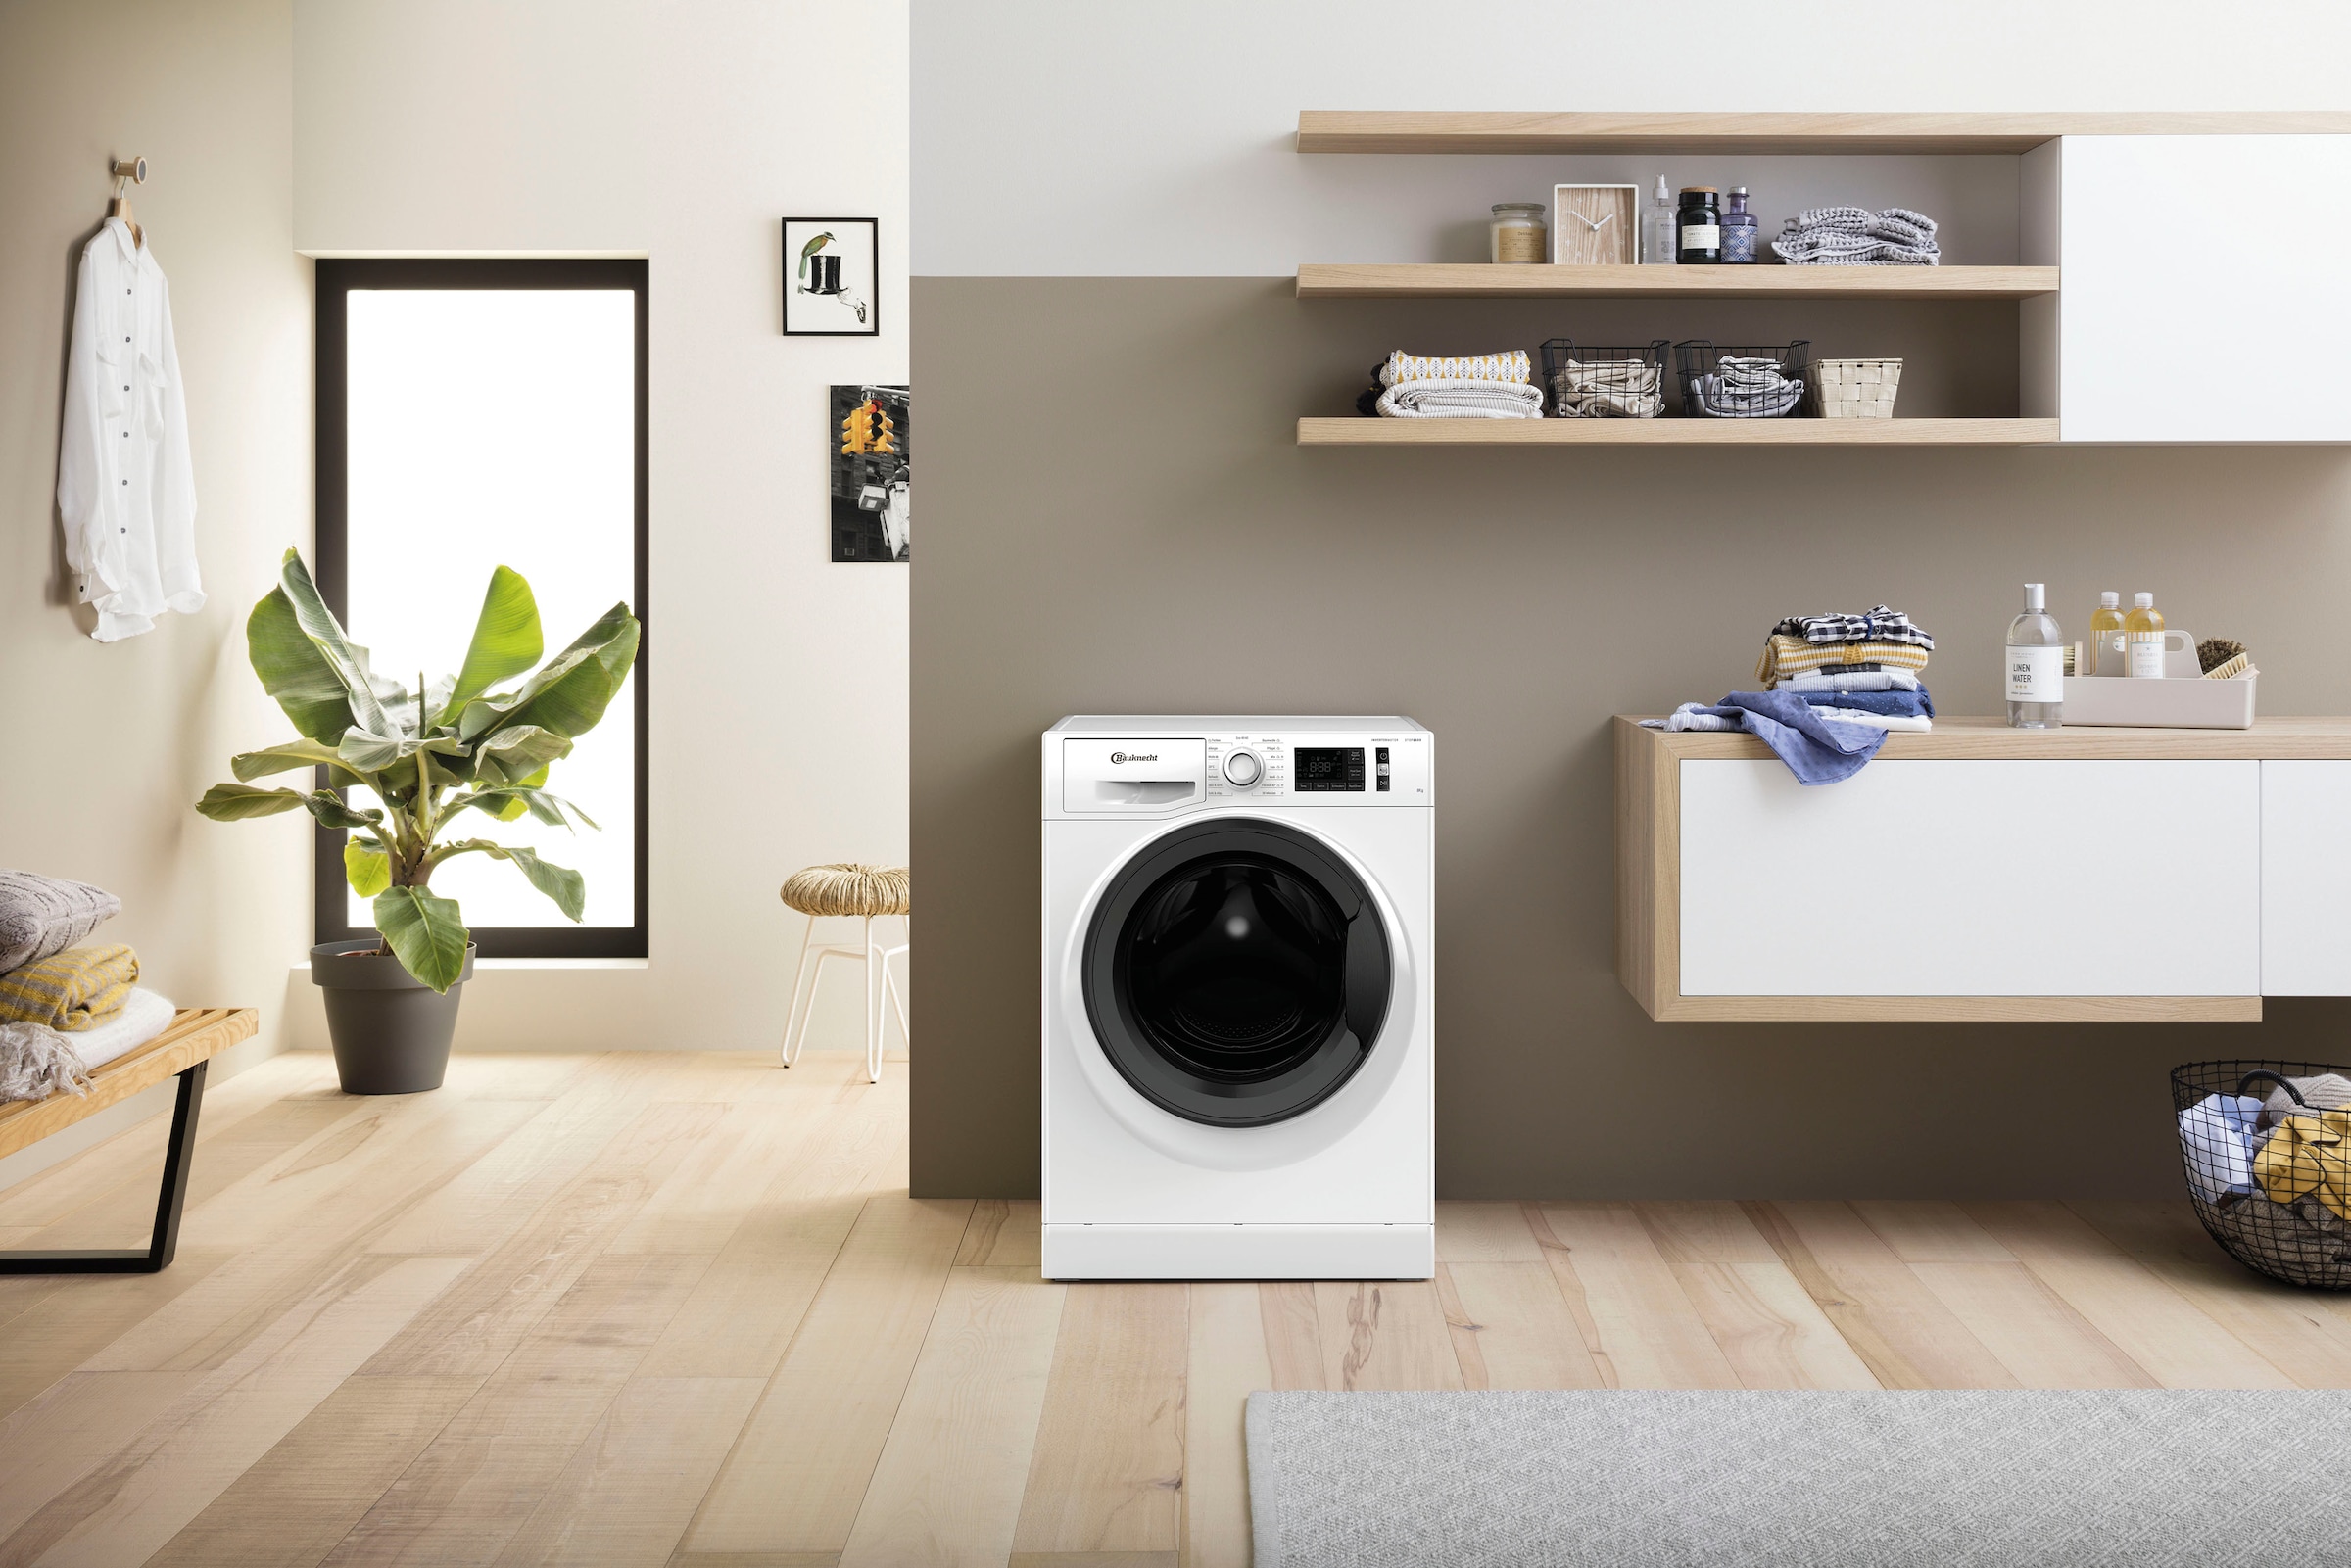 kg, BAUKNECHT Waschmaschine 8421«, 8 Eco jetzt Super »Super 1400 OTTO U/min bei Eco 8421, online